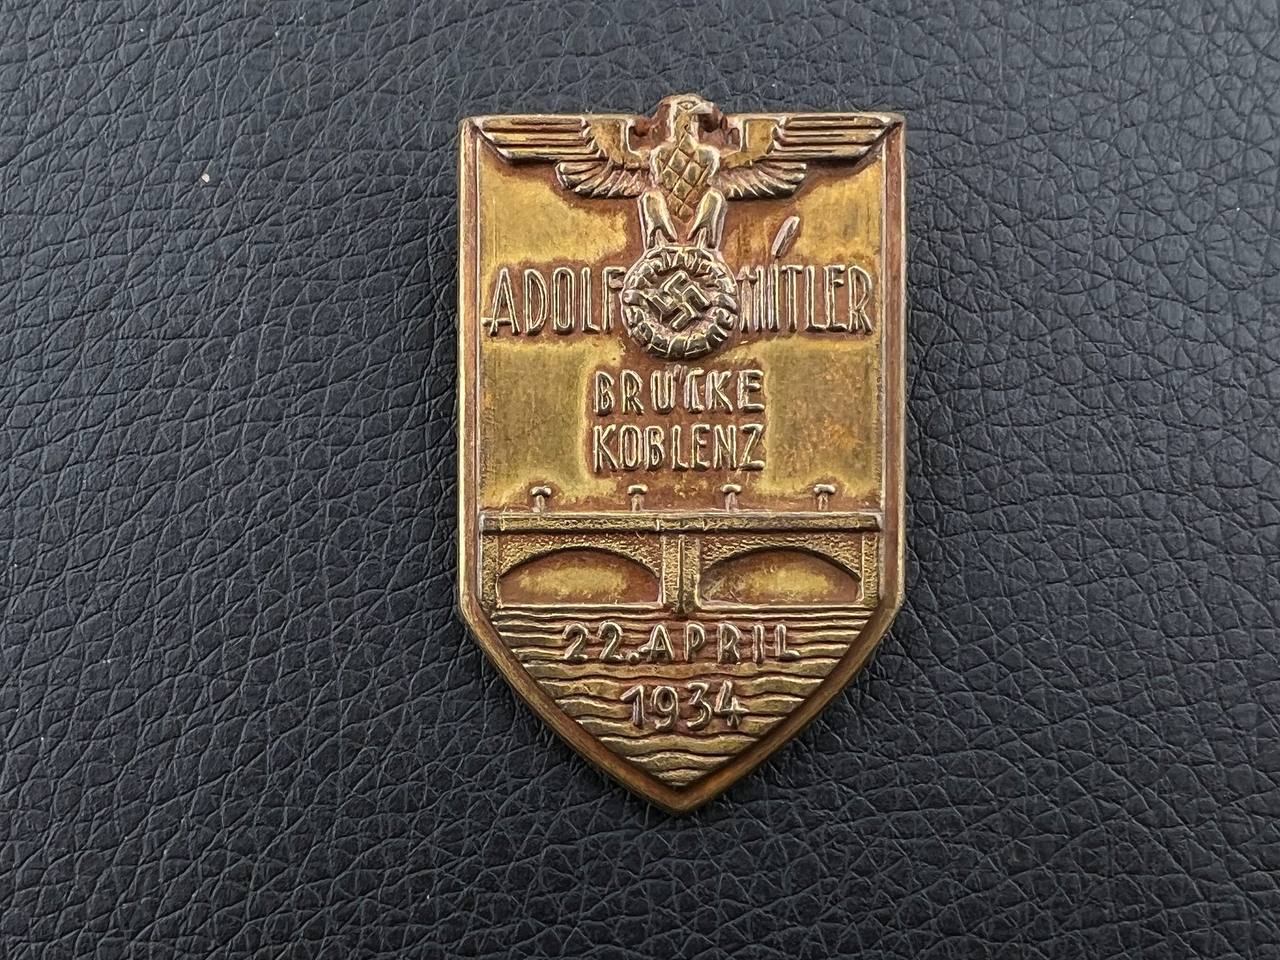 Значок в честь присвоения имени Адольфа Гитлера мосту в г. Кобленц 22 апреля 1934 г. От Алексея С.